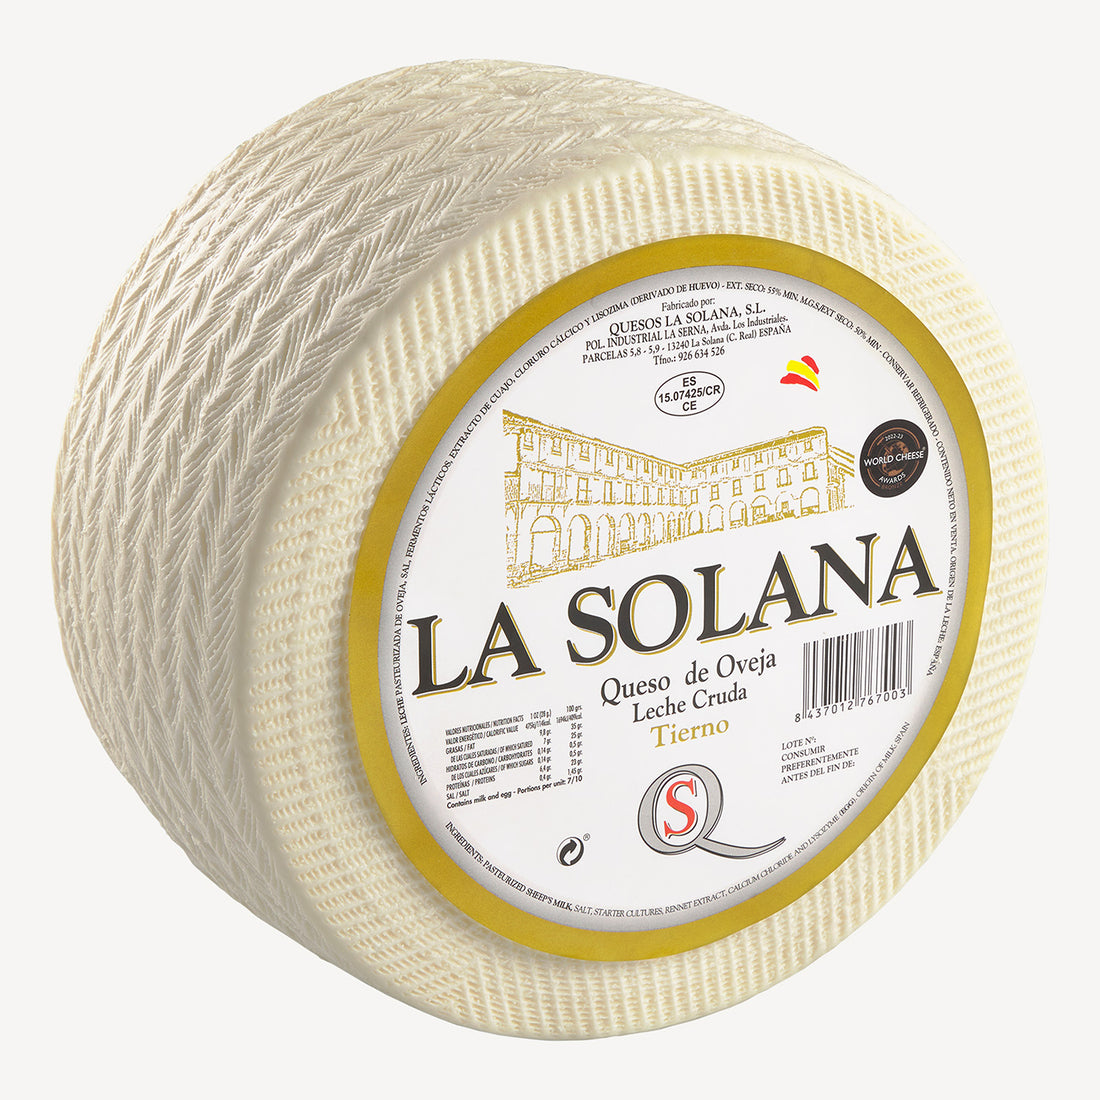 El queso tierno en su totalidad, una expresión de la artesanía y la frescura que define cada producto de La Solana.